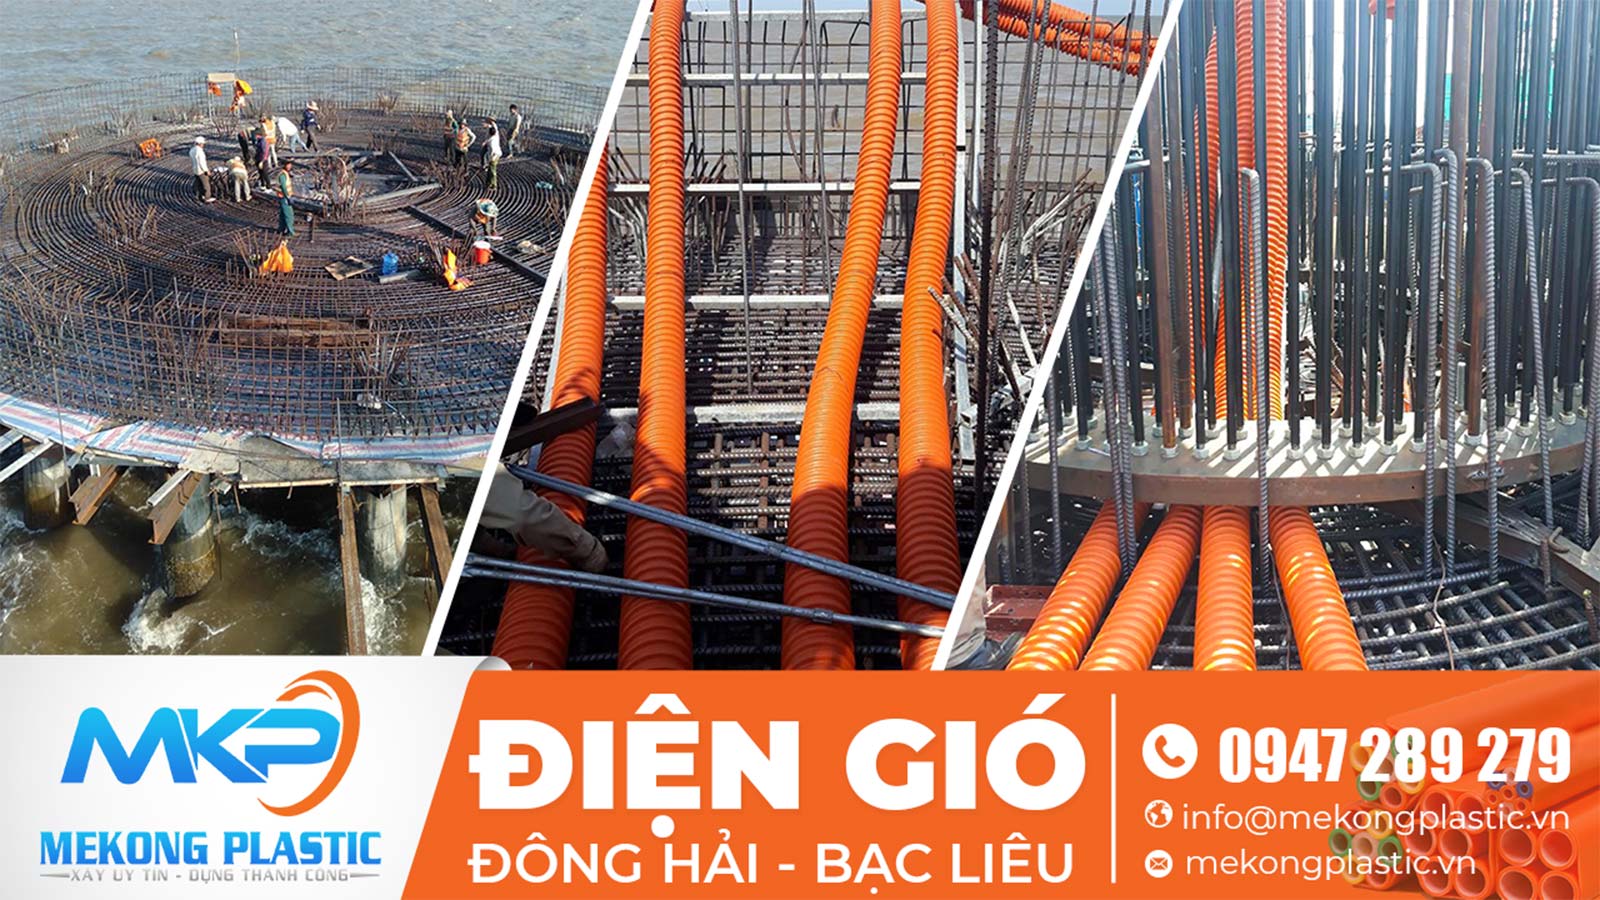 Tại sao ống nhựa Mekong Plastic luôn được các dự án cấp thoát nước lớn tin dùng